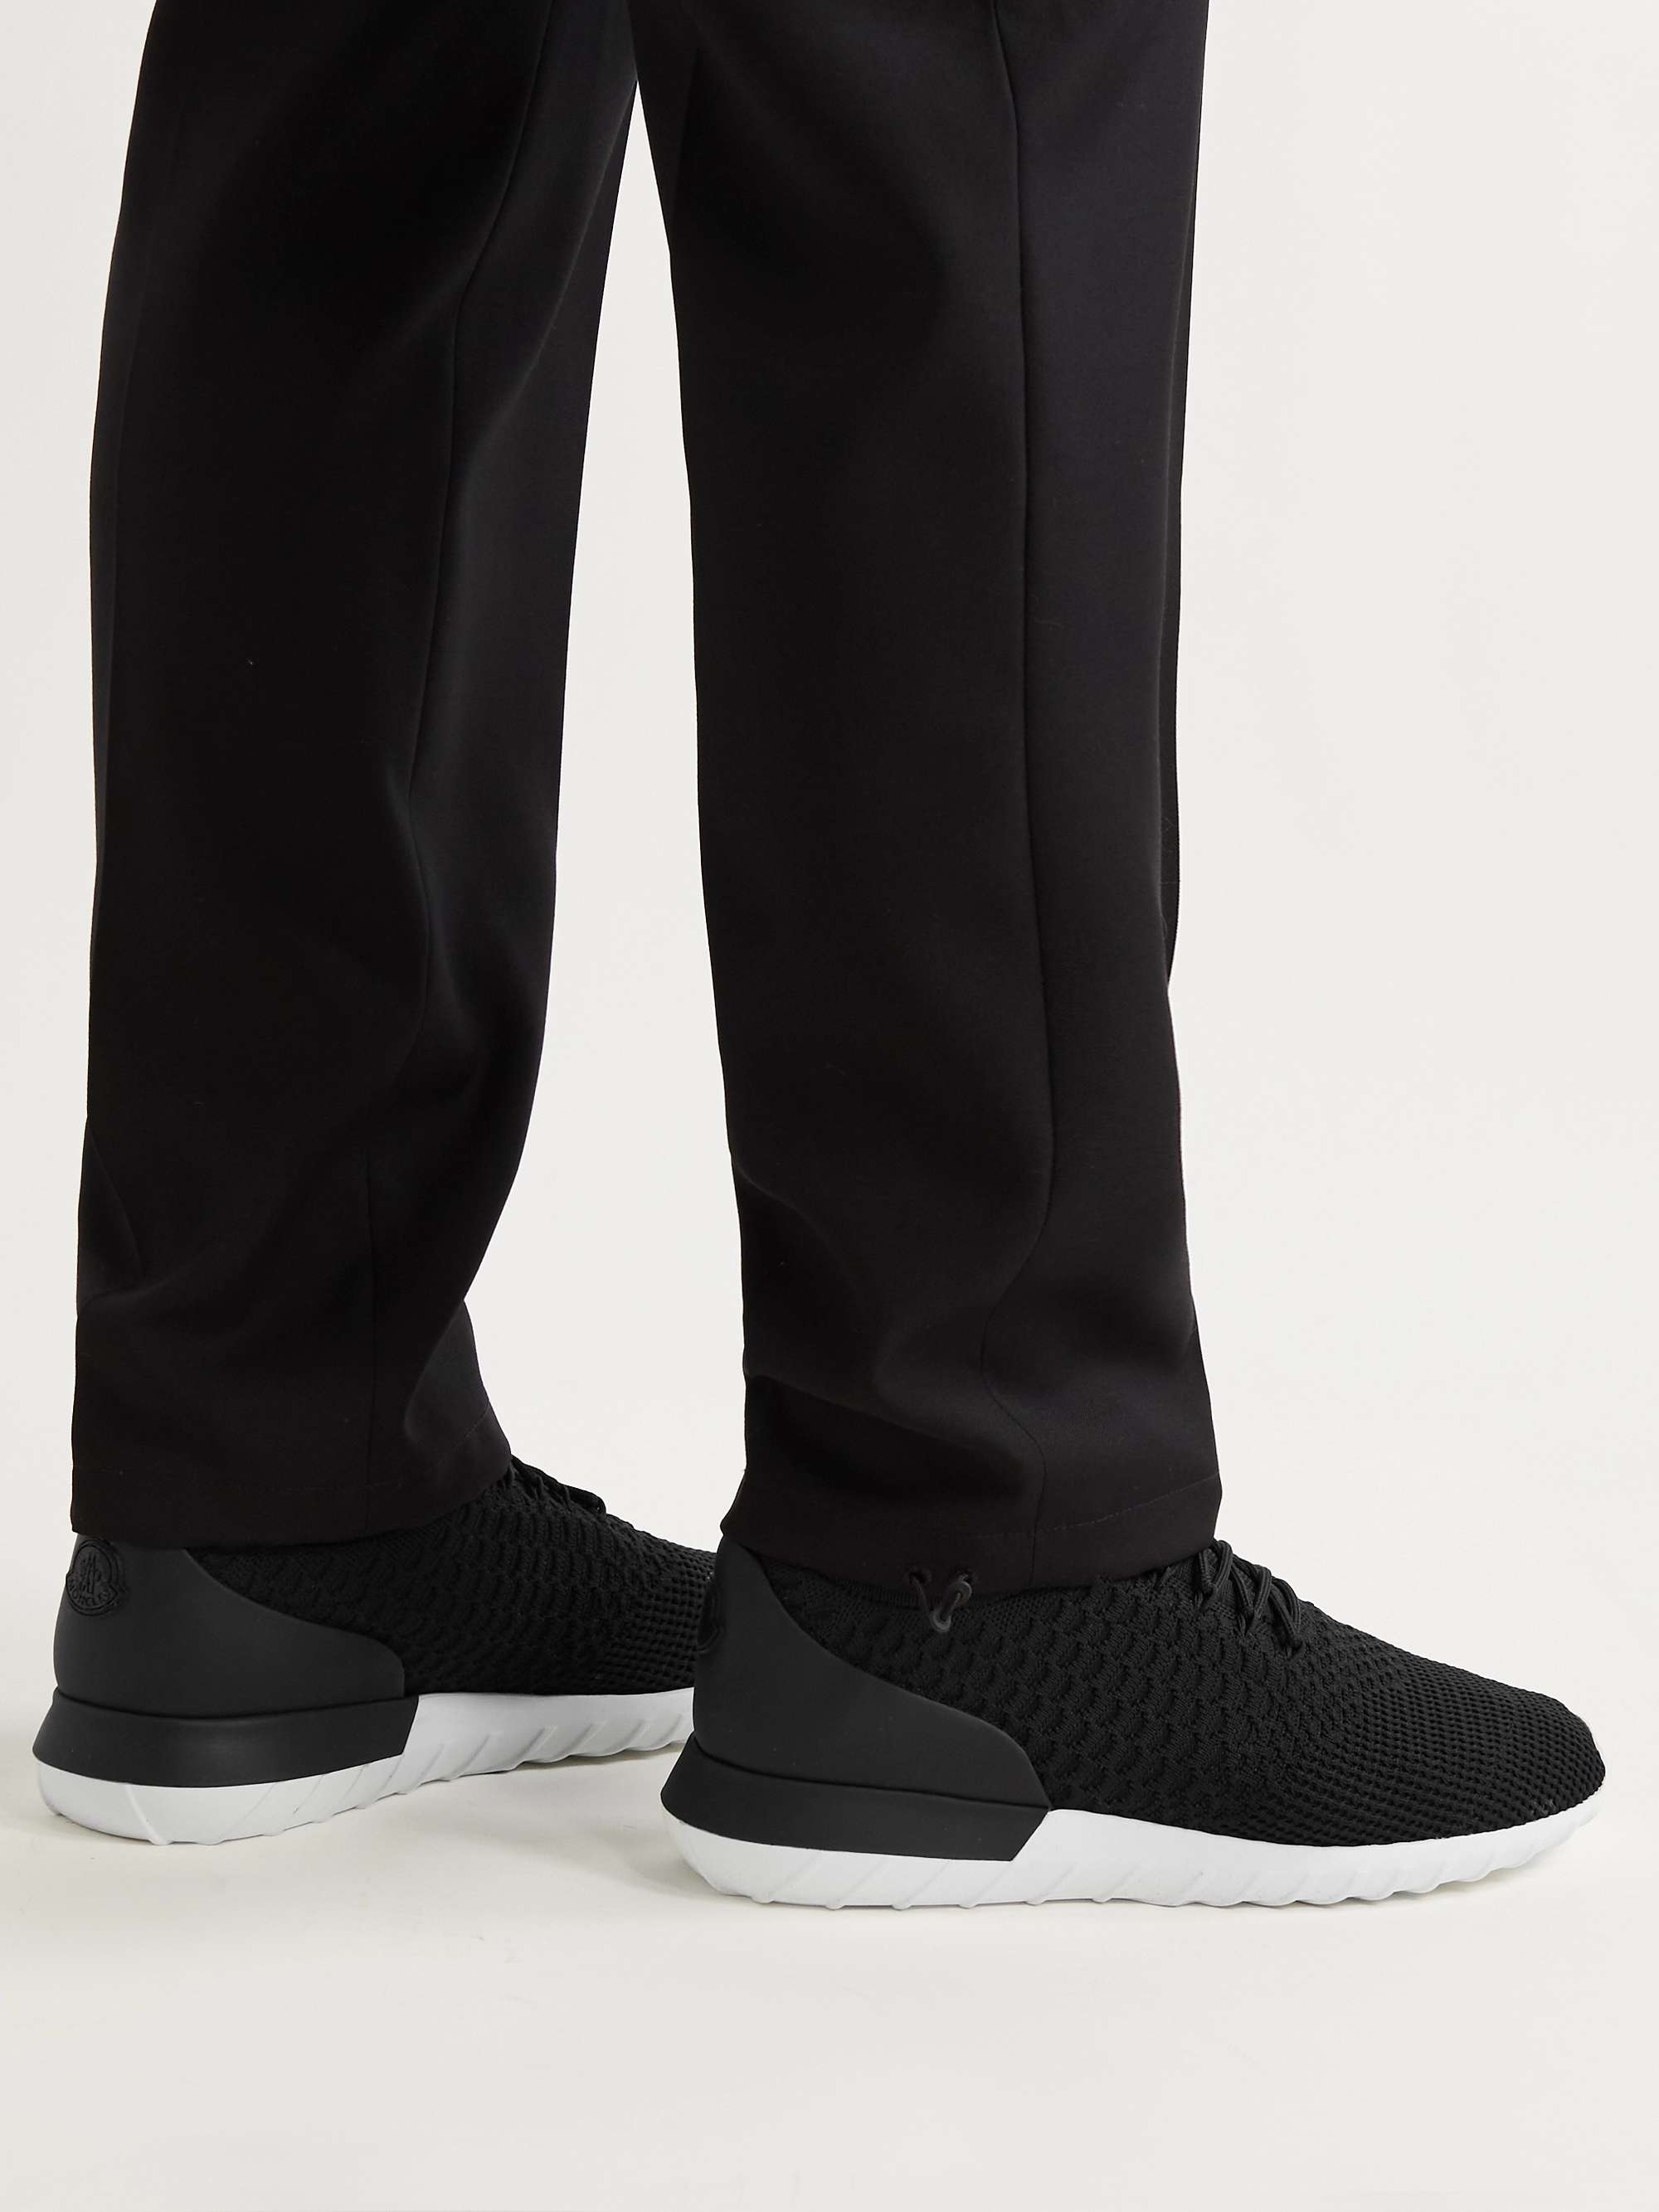 MONCLER Emilien Leather-Trimmed Stretch-Knit Sneakers for Men | MR PORTER